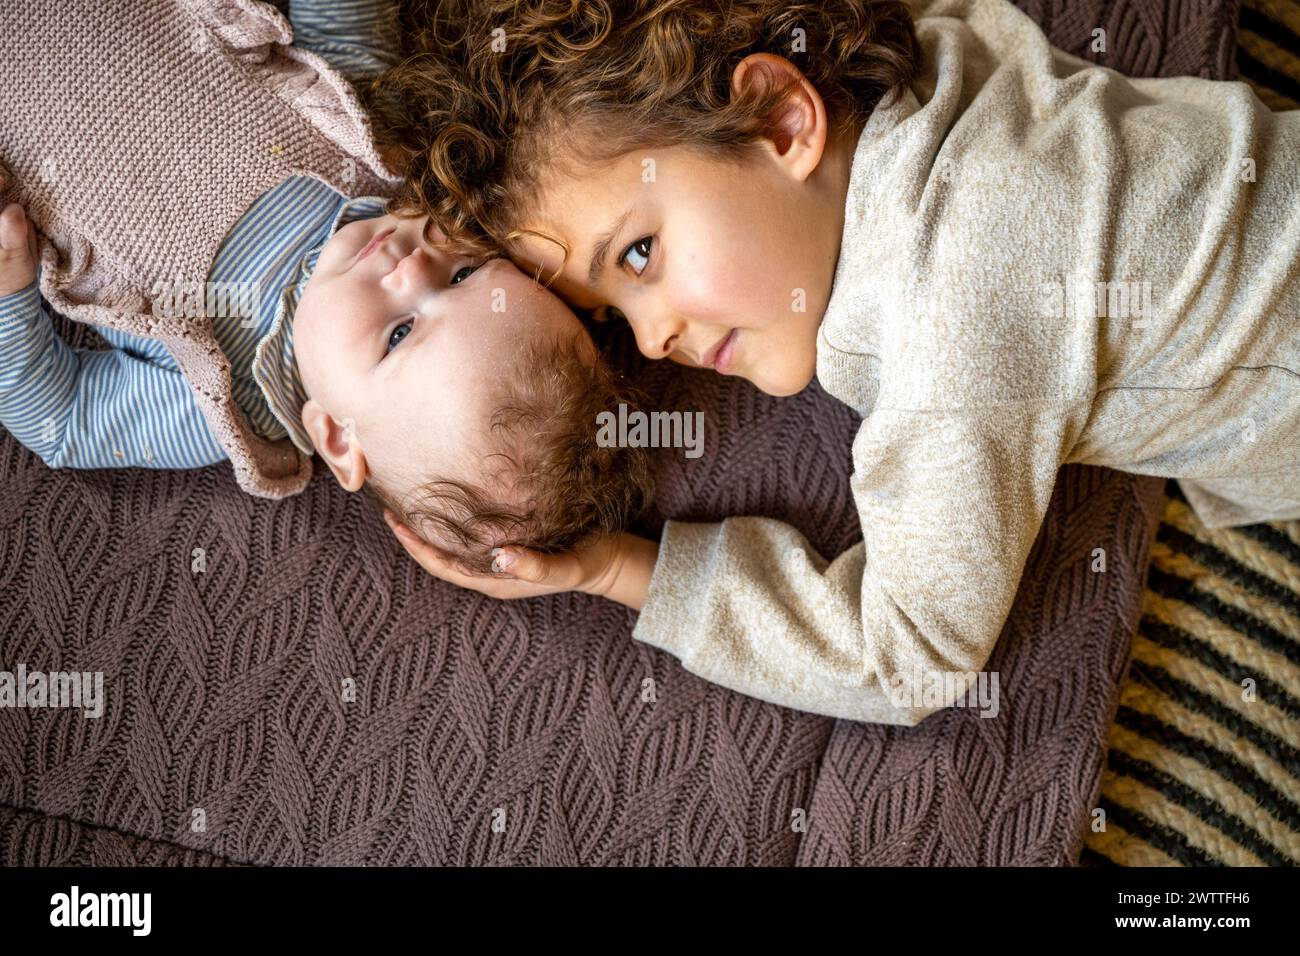 Ein zärtlicher Moment, als ein kleines Kind liebevoll ein Geschwister ansieht, das auf einer kuscheligen Strickdecke liegt. Stockfoto